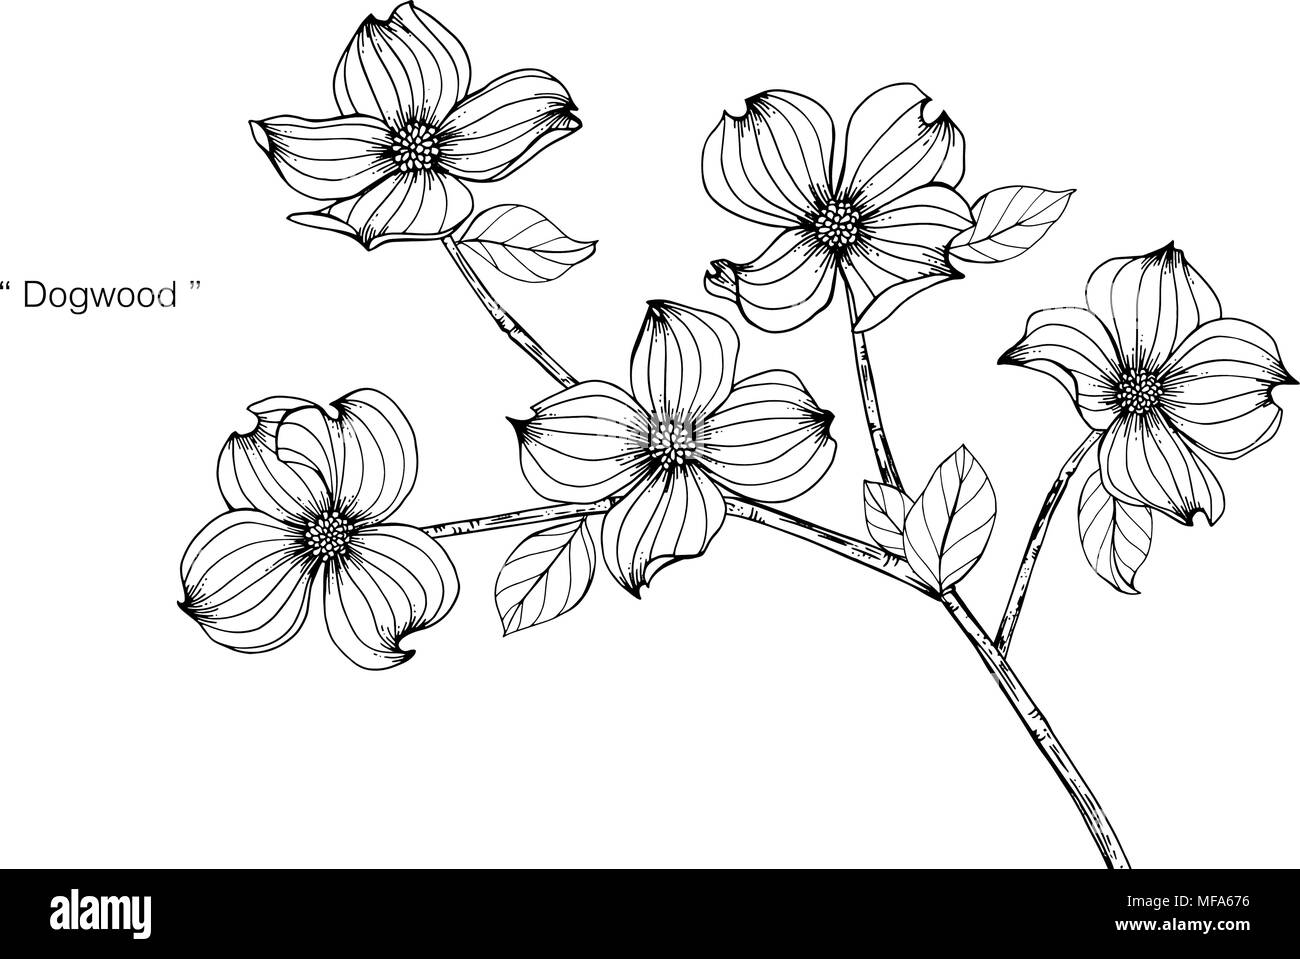 Corniolo sanguinello disegno fiore illustrazione. In bianco e nero con la linea arte su sfondi bianchi. Illustrazione Vettoriale